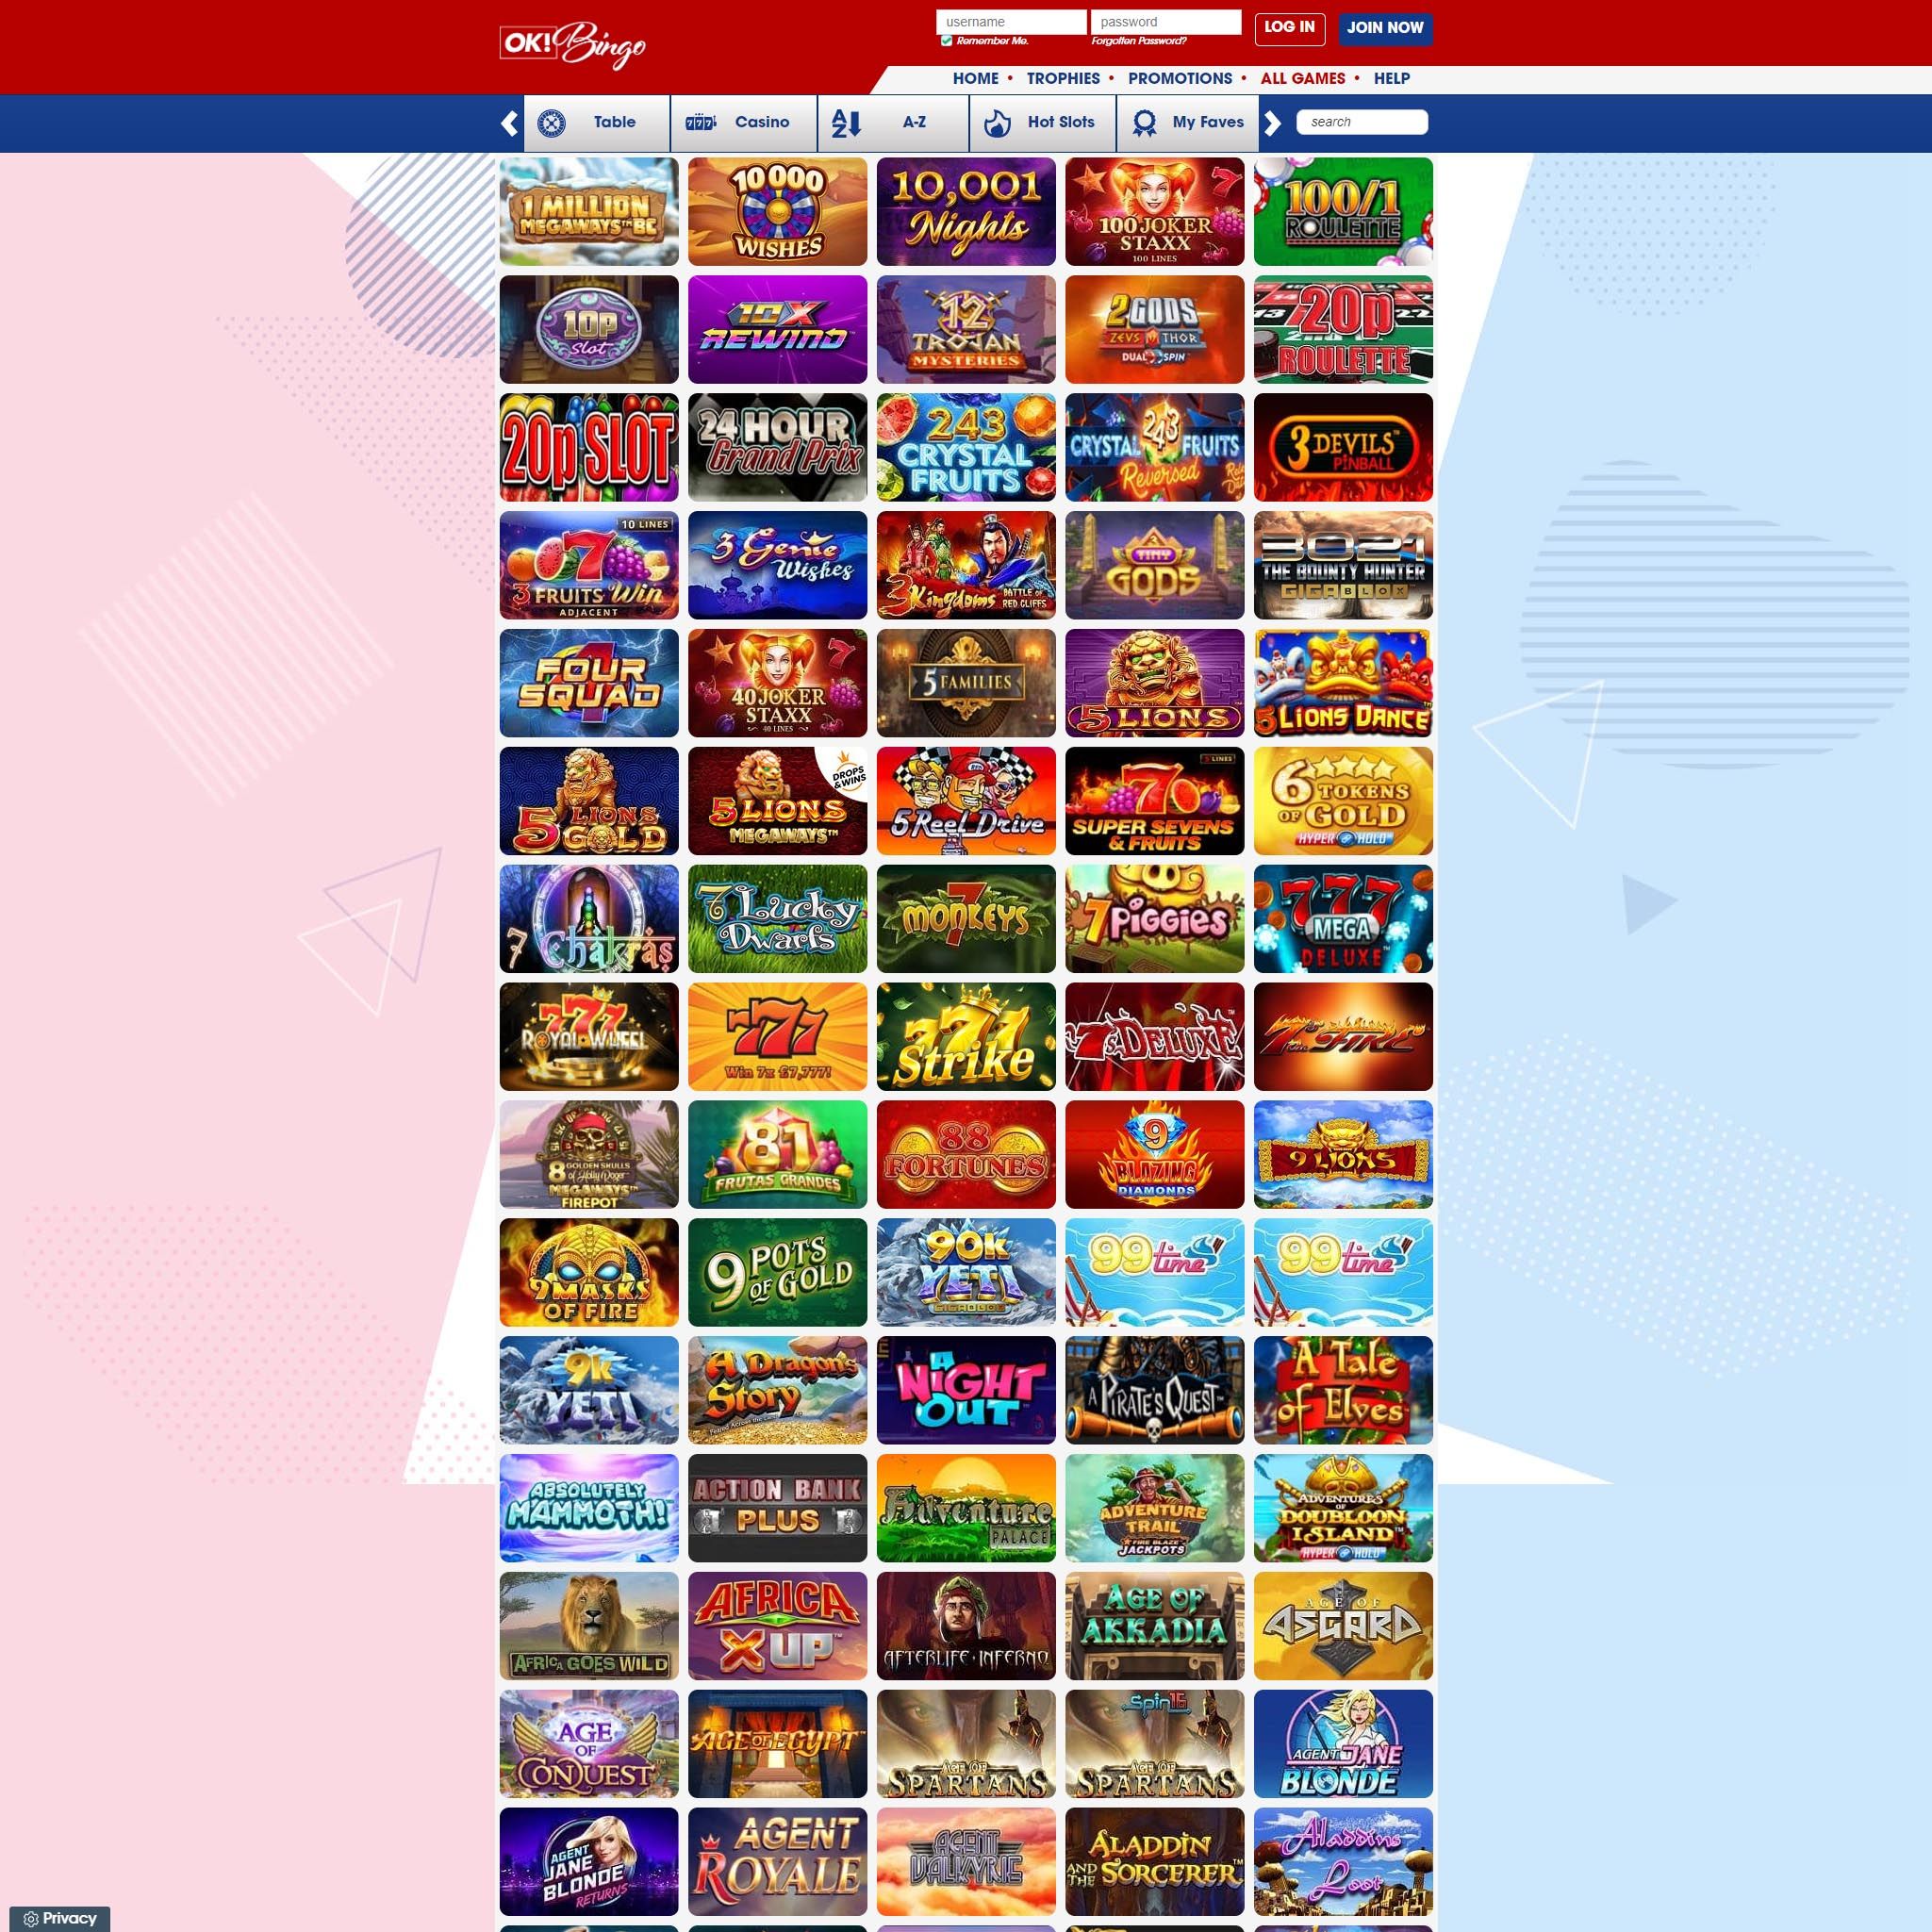 OK Bingo full games catalogue